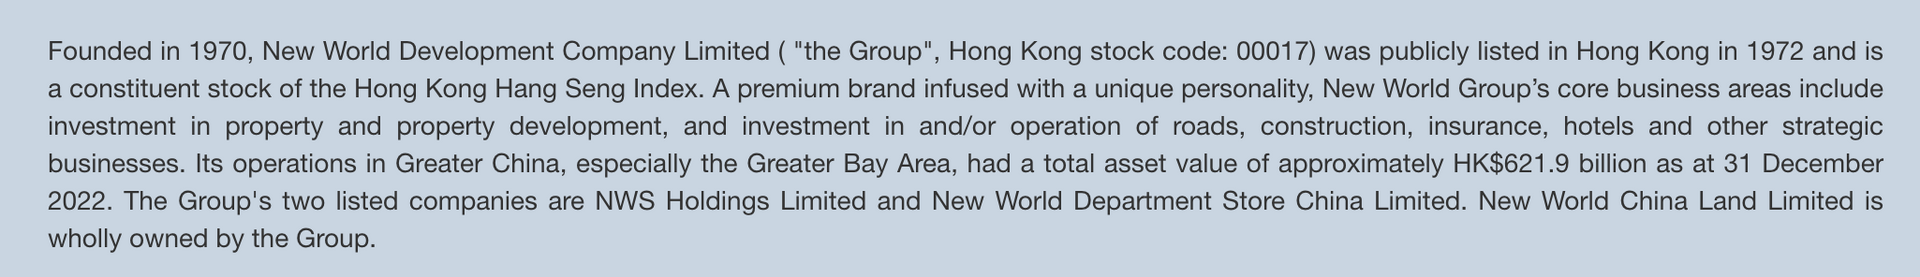 Lai lịch gia tộc Hong Kong có thể mua lại resort casino lớn nhất Việt Nam - 2